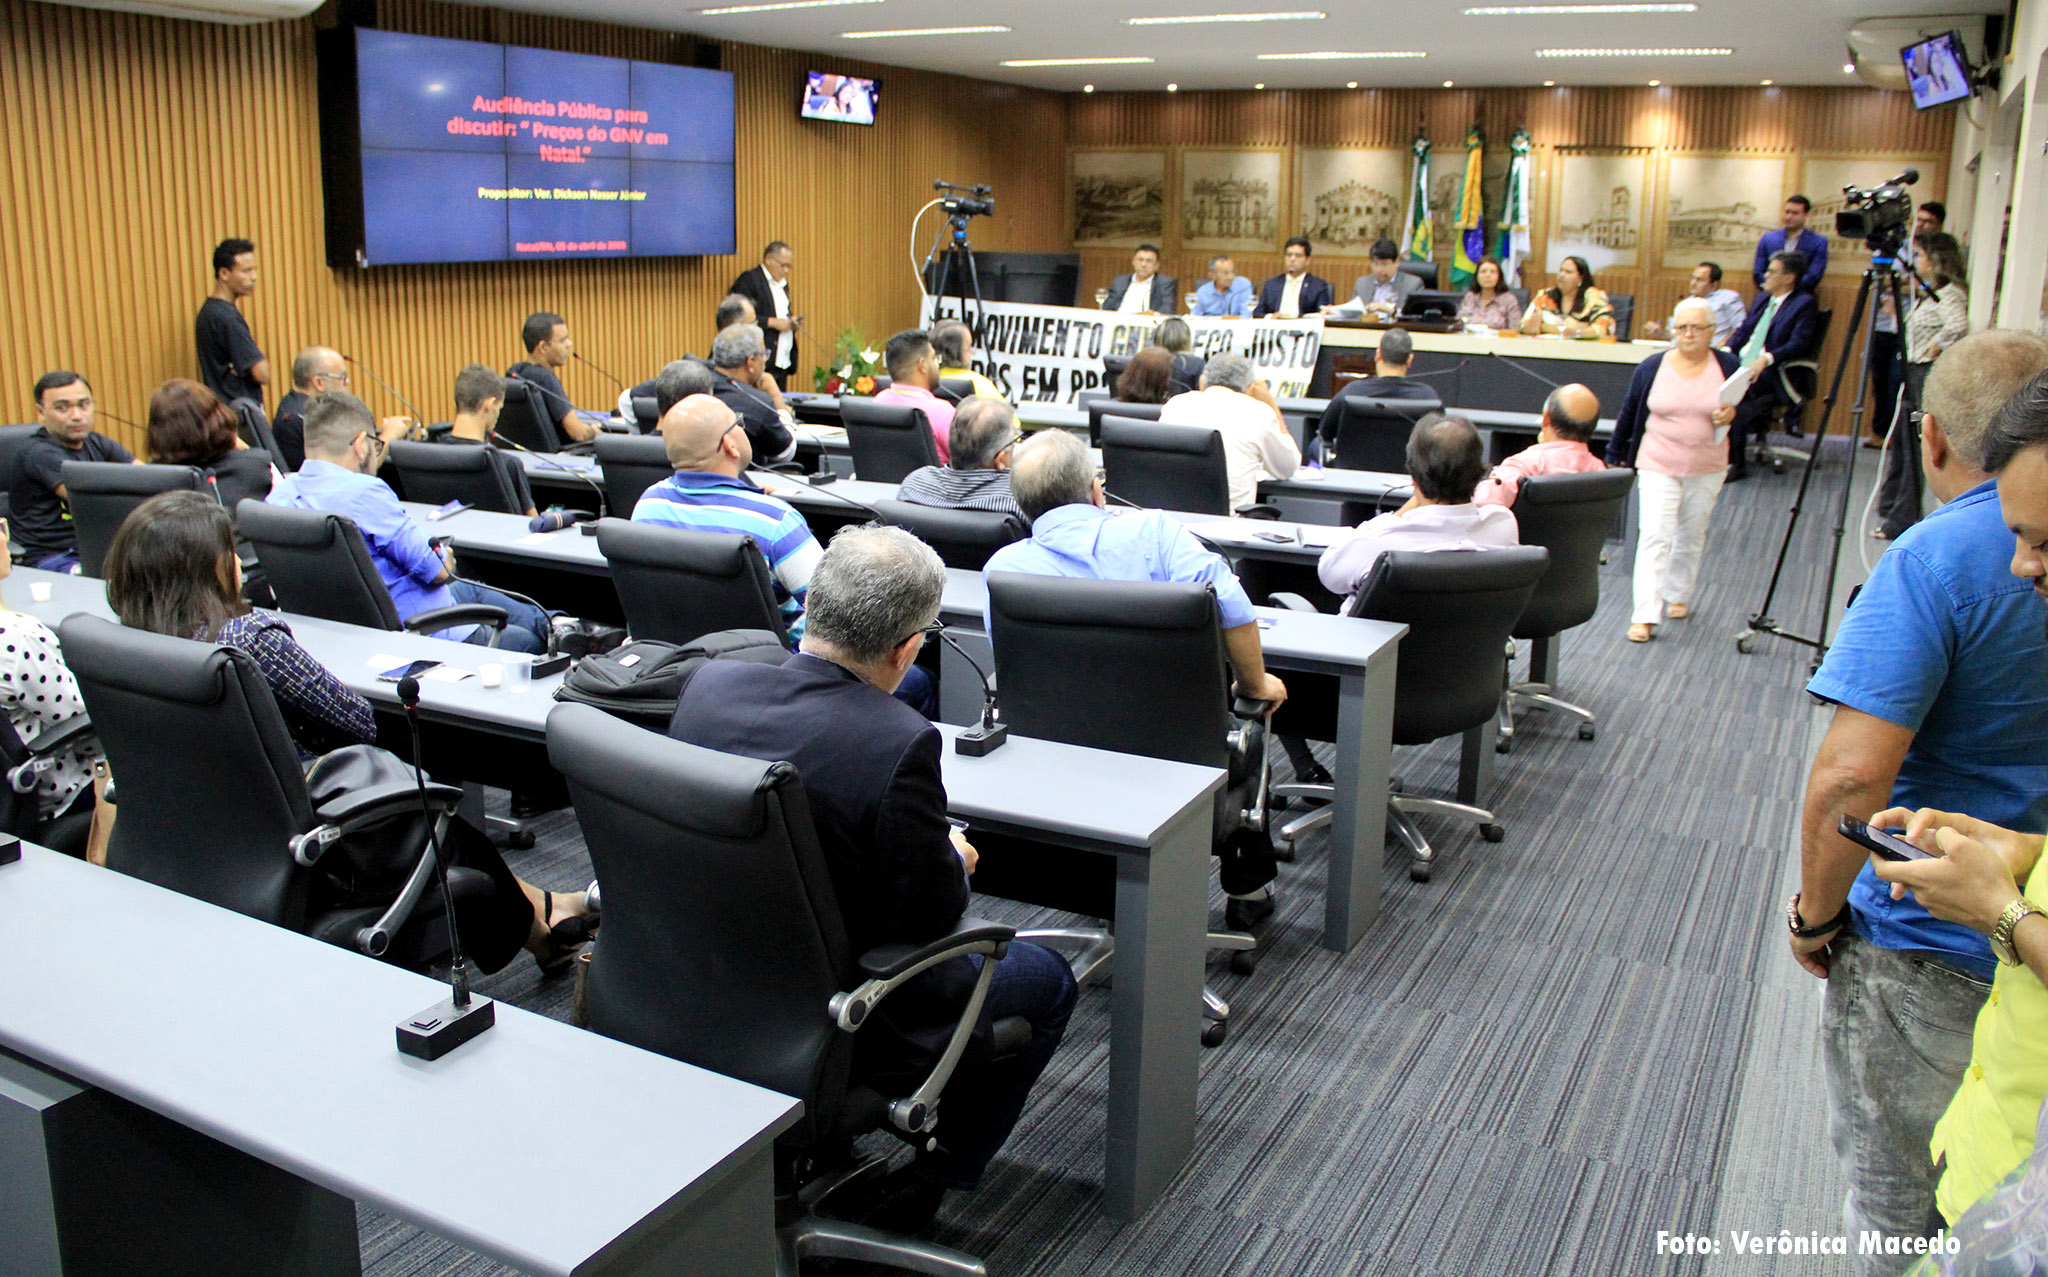 Câmara vai intermediar audiência com governadora por redução de preço do GNV  | Câmara Municipal de Natal